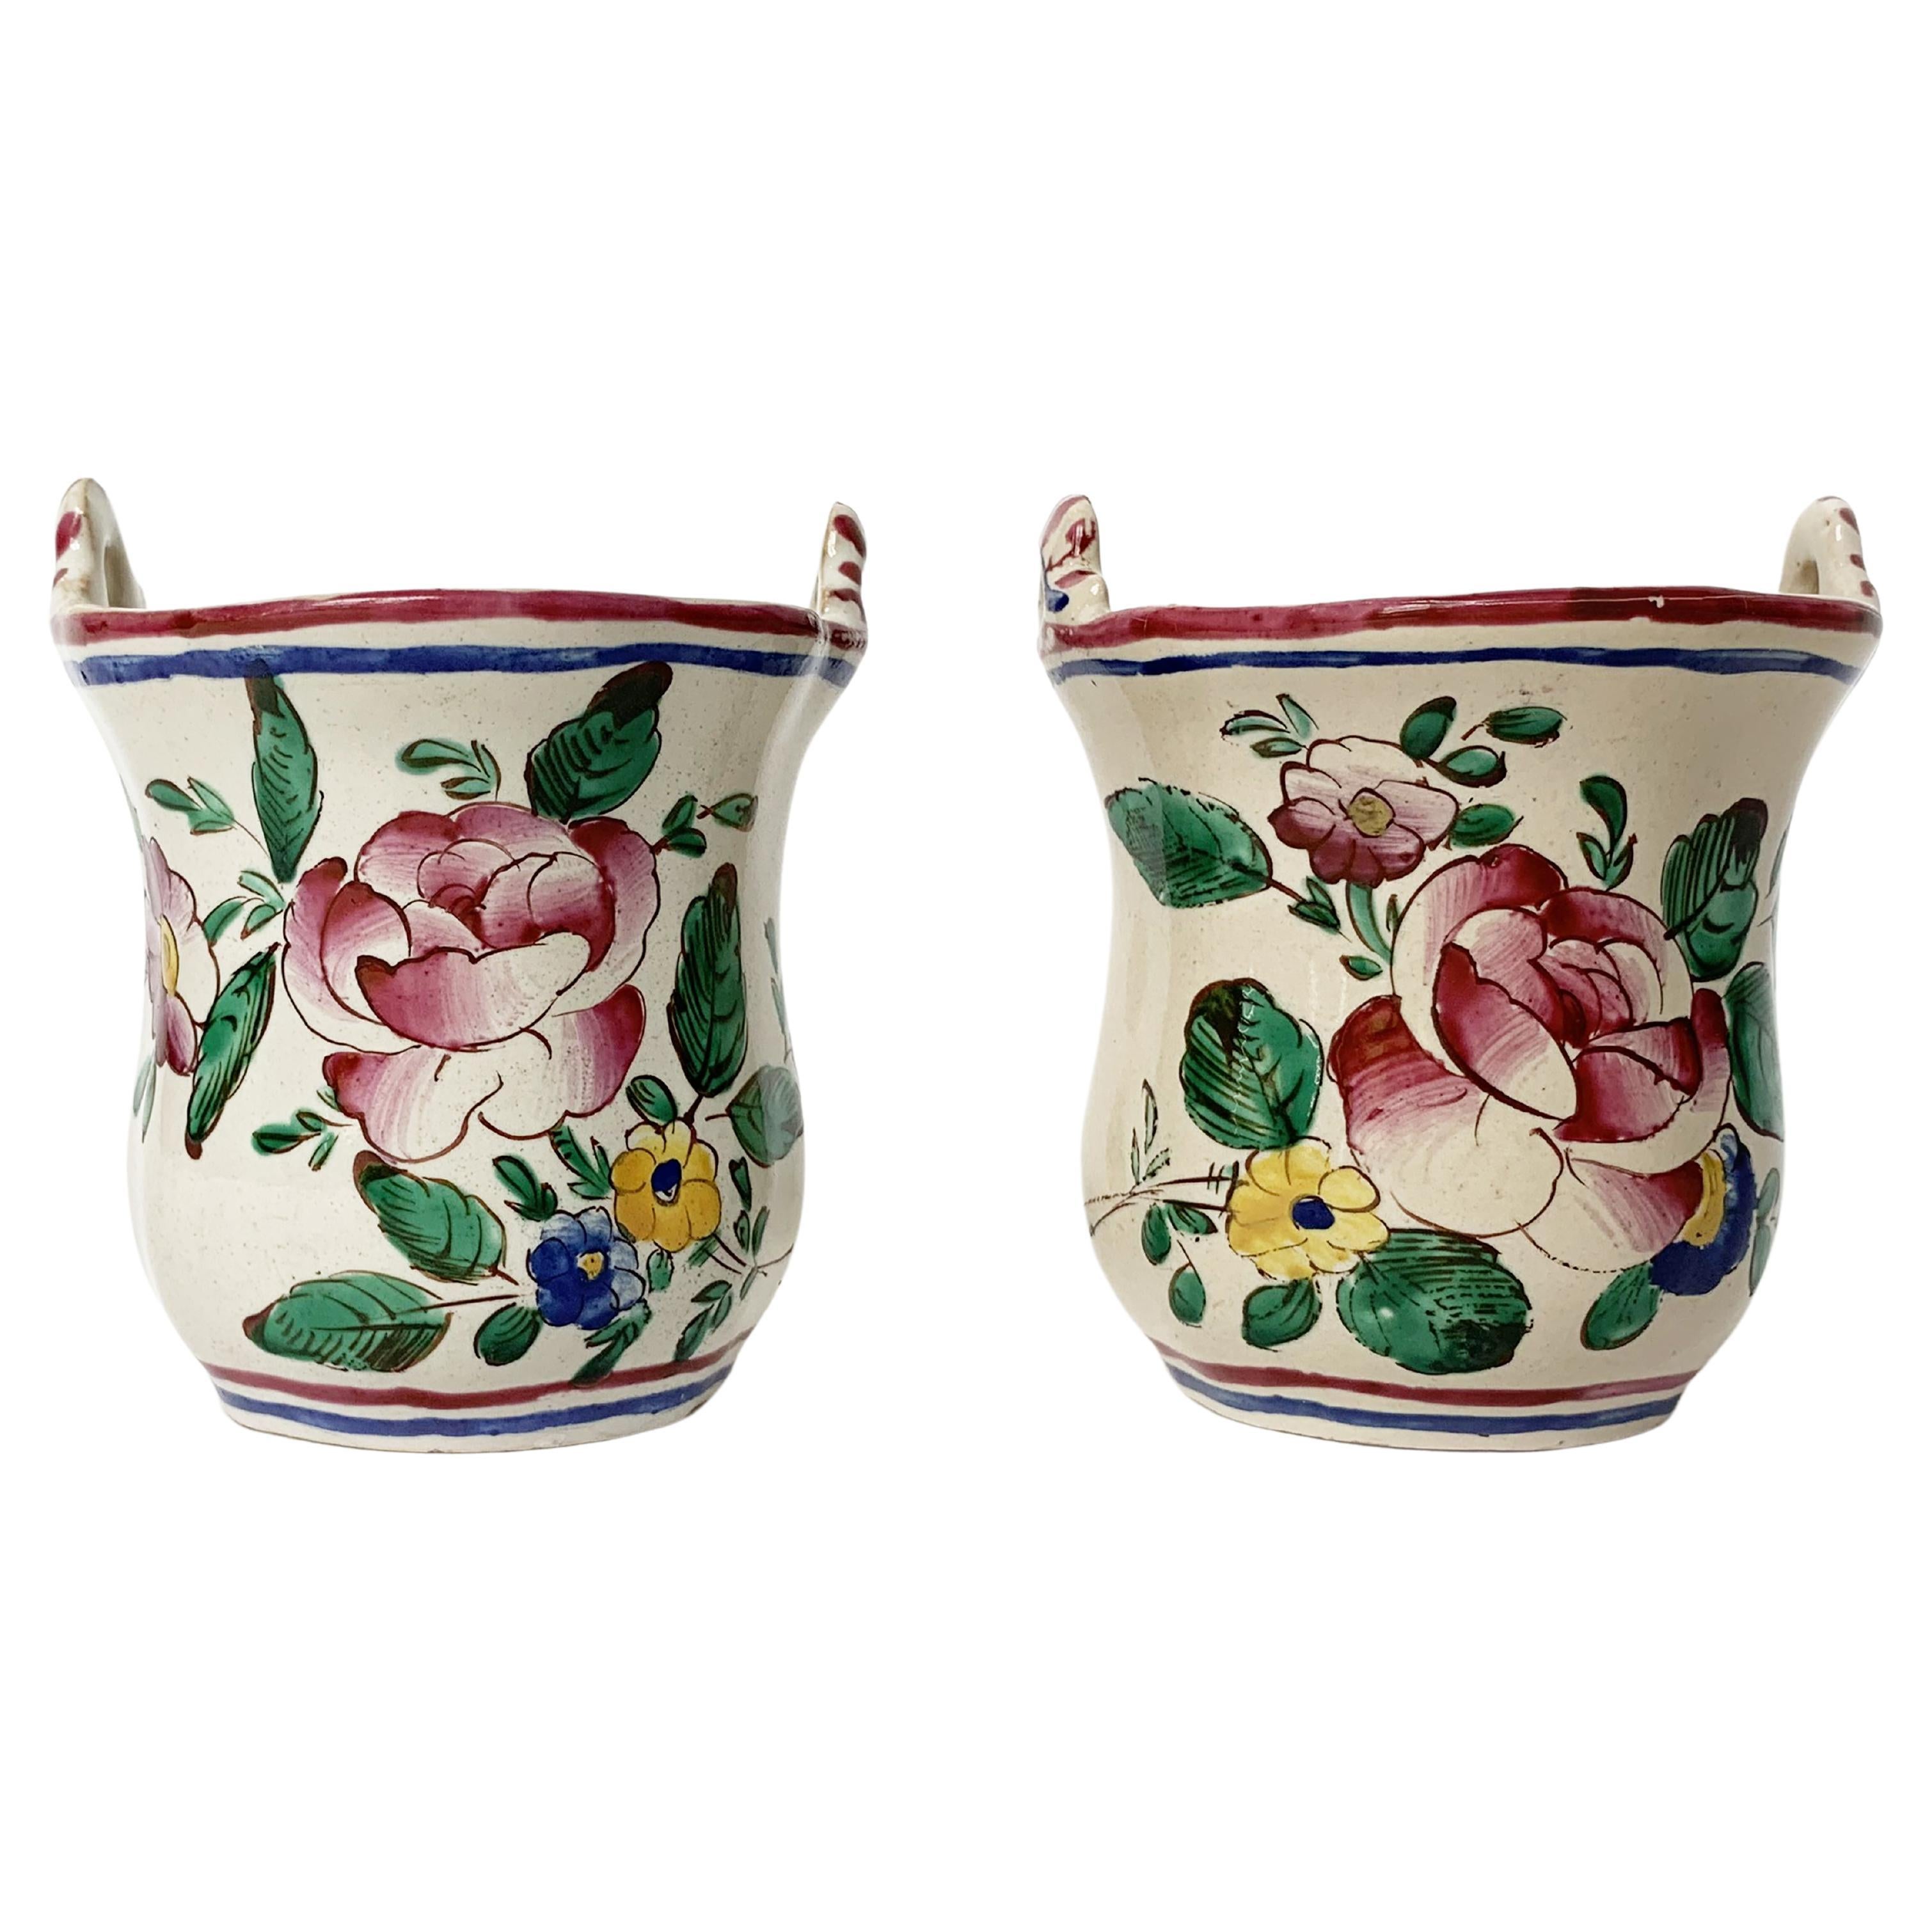 Small Maiolica Flower Pots, Ferretti Manufacture, Lodi, circa 1770-1780 For Sale